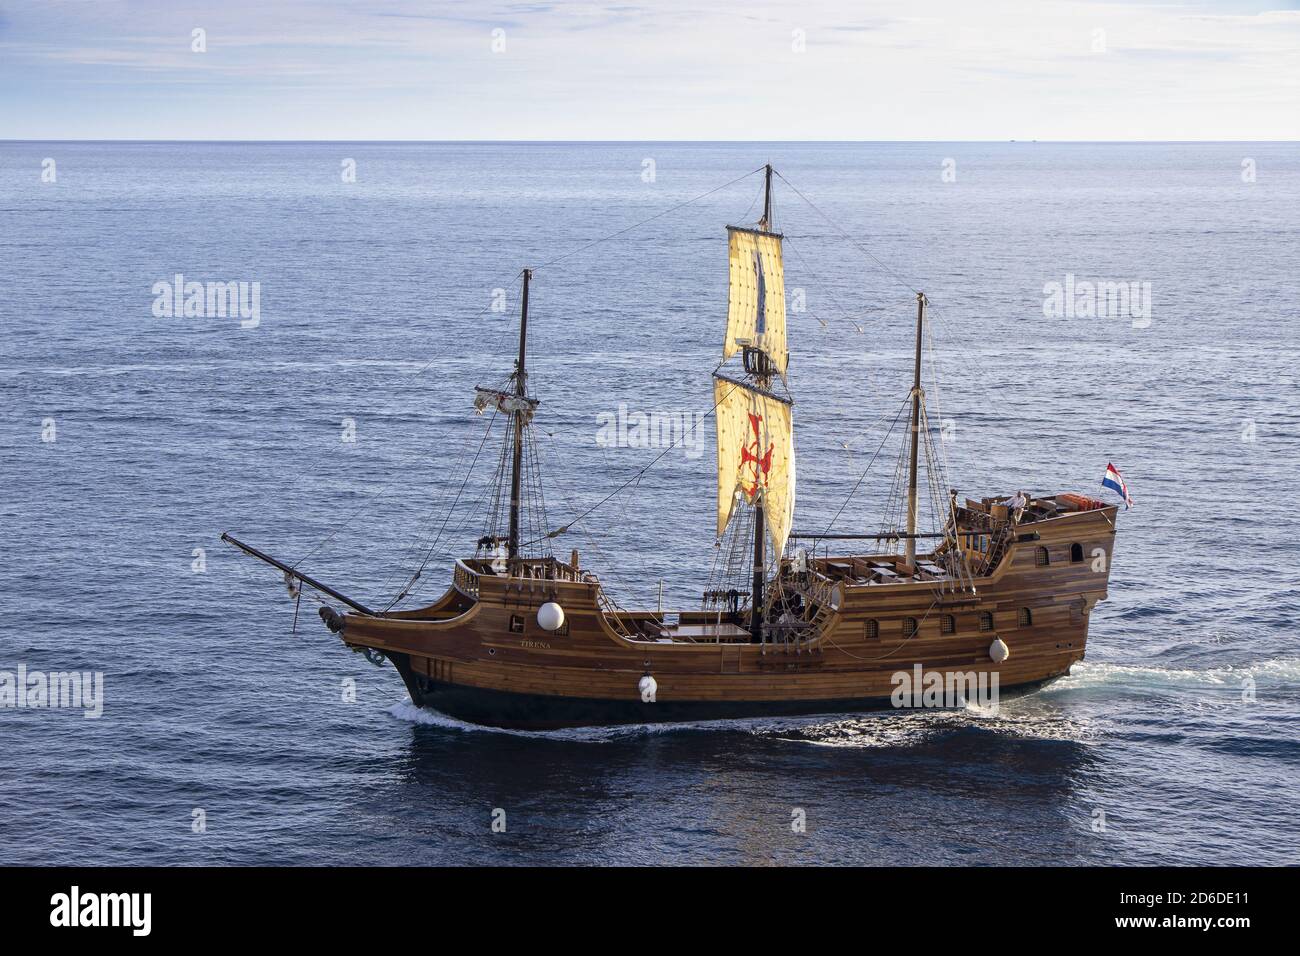 Dubrovnik, Croatie - 02. Septembre 2020 : Tirena, réplique touristique d'un bateau médiéval en bois, naviguant jusqu'au vieux port de Dubrovnik, Croatie, Europe. Banque D'Images